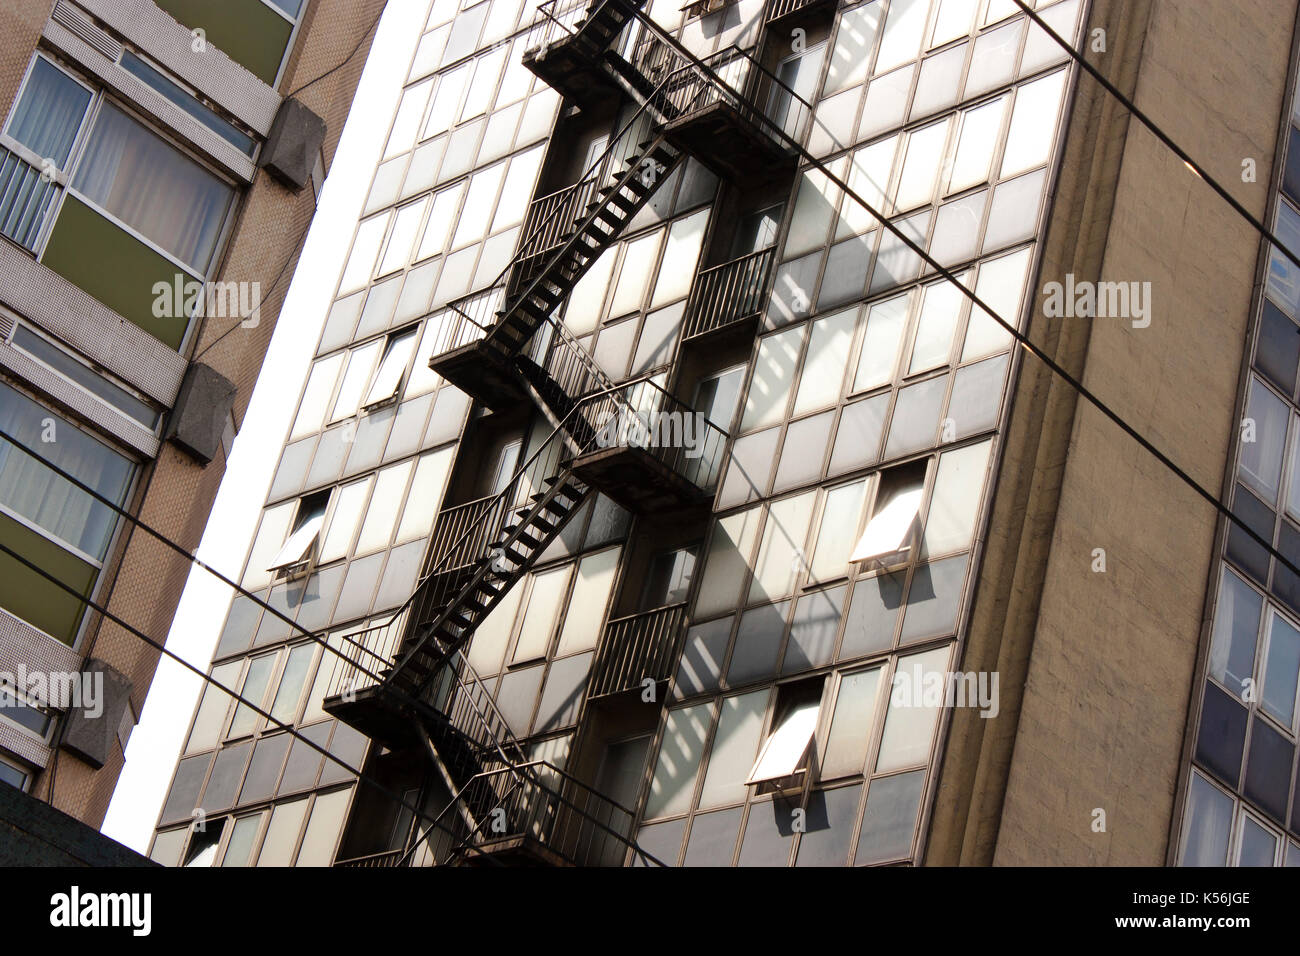 Detail der Fassade mit externen Notausgang - Flucht Treppe Stockfoto